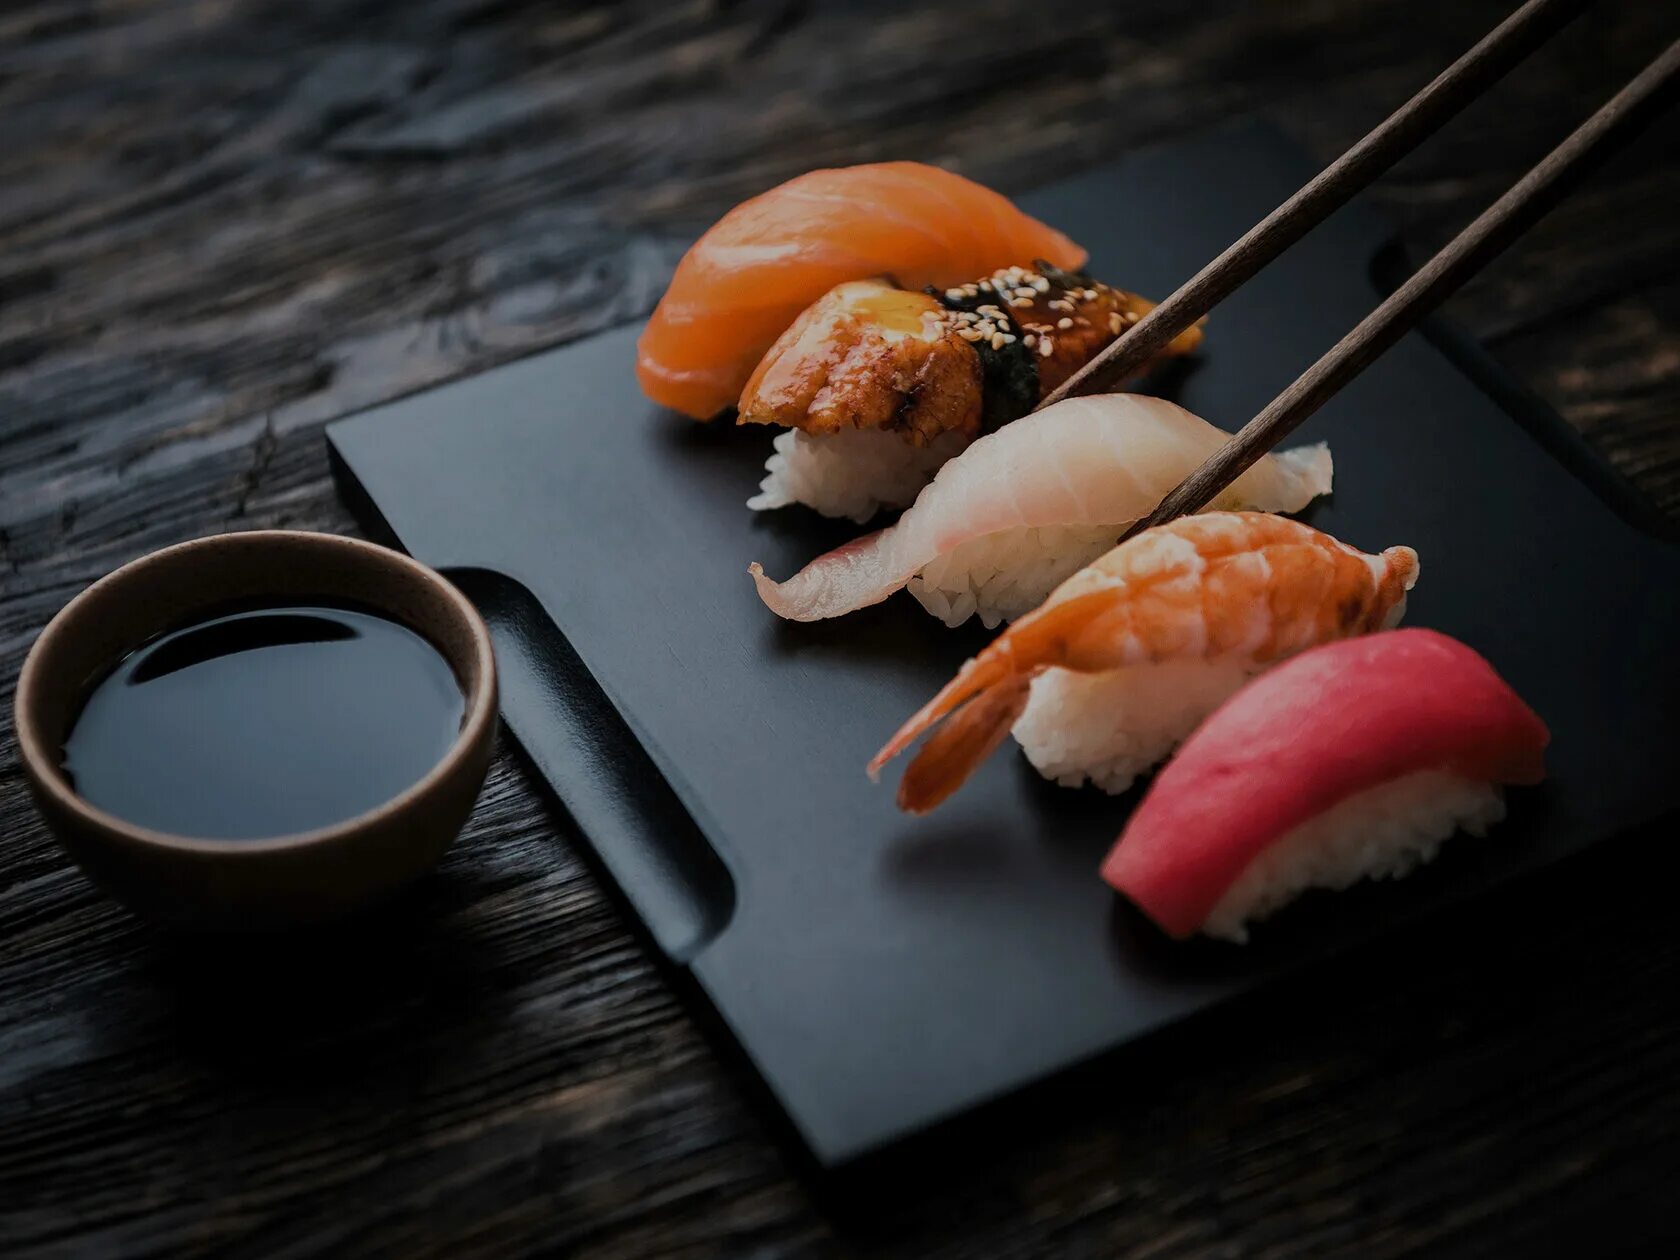 Нигири и сашими. Суши, японская кухня, нигири. Суши, сашими и нигири. Нигири сет.